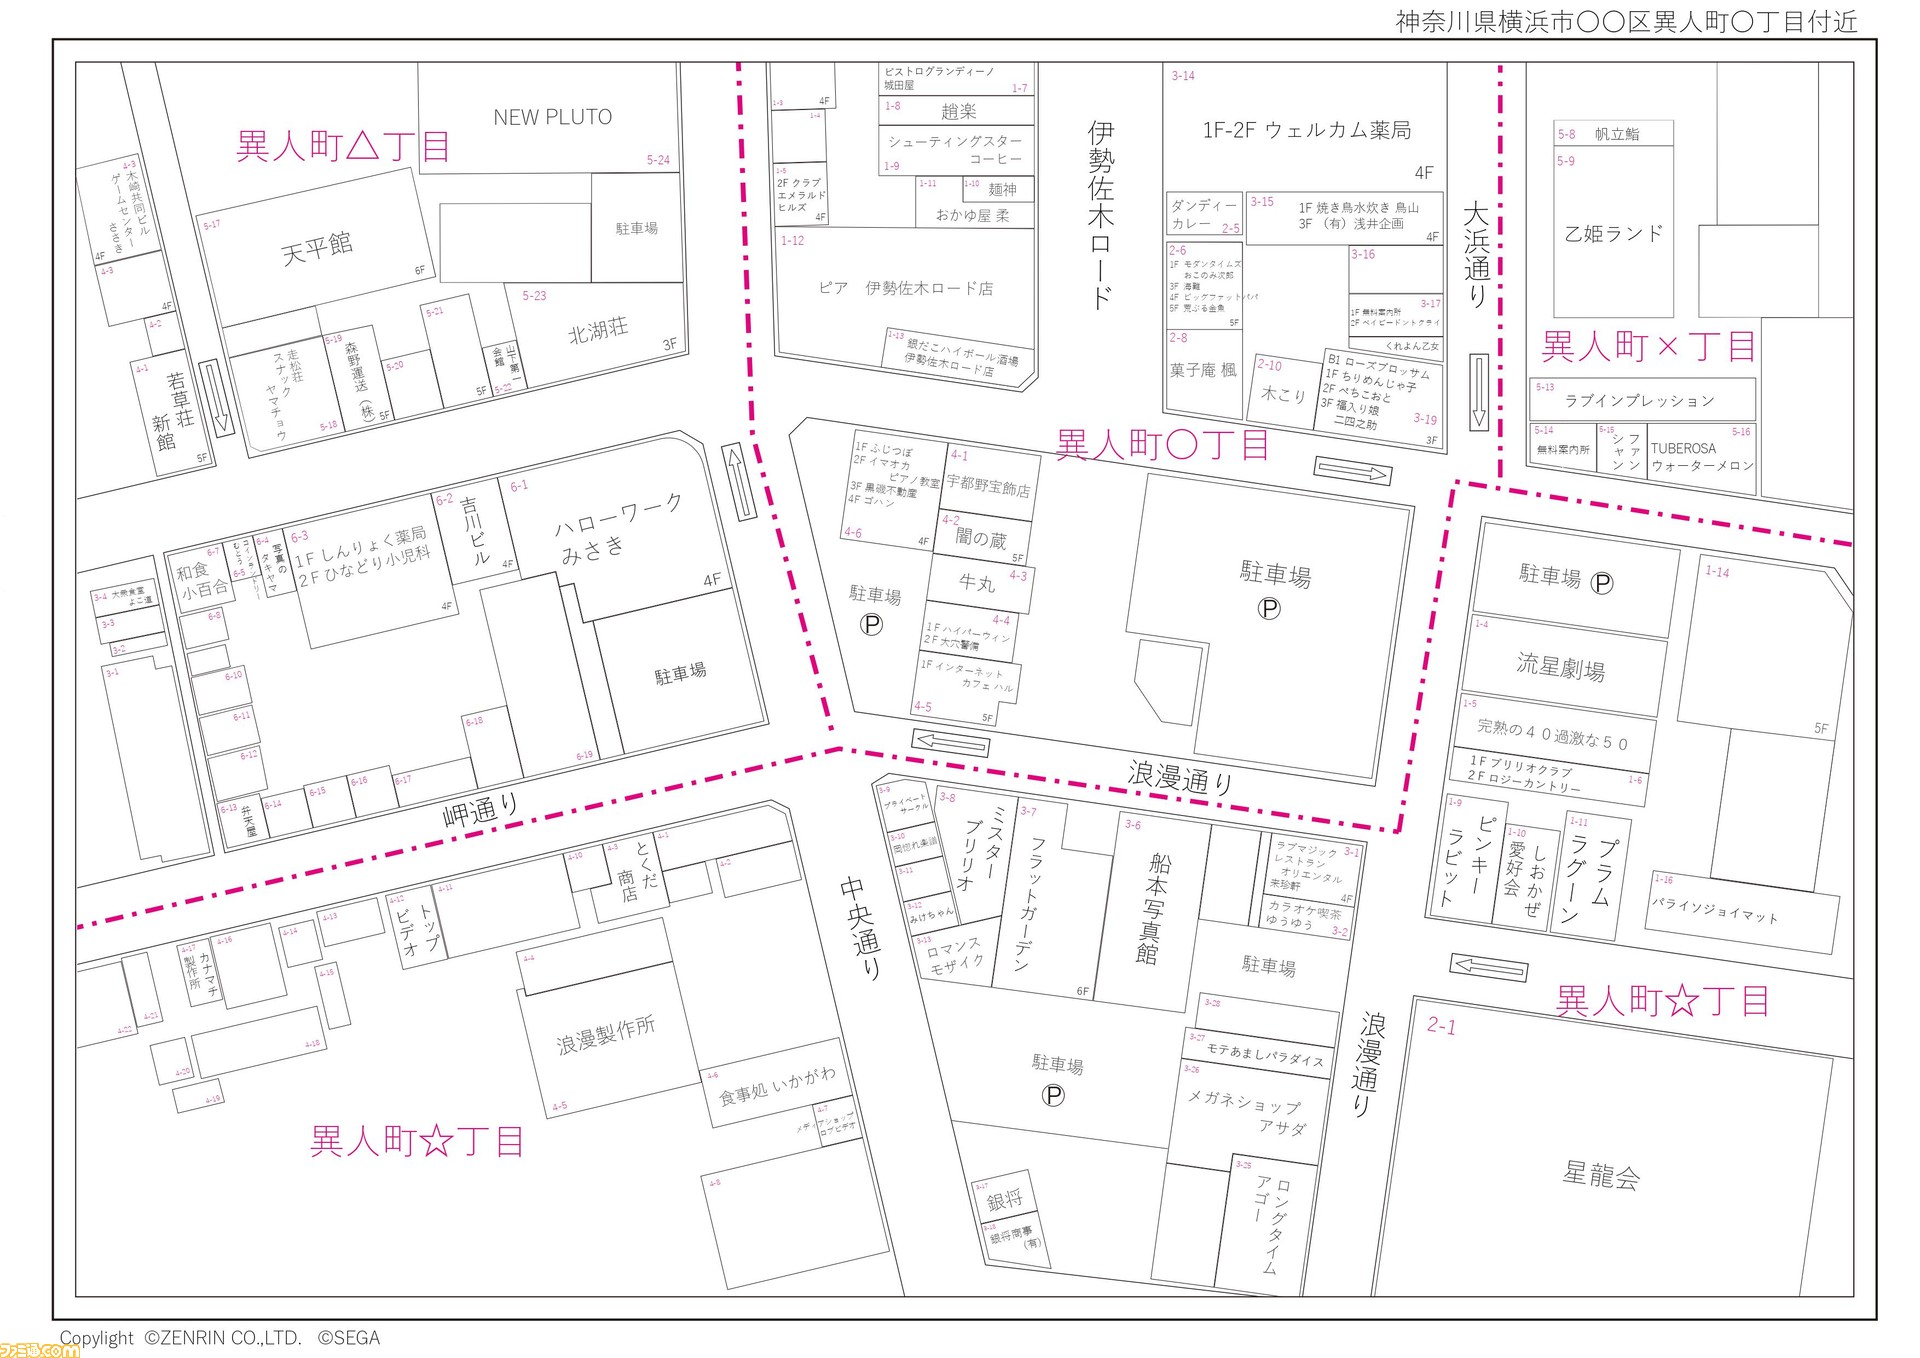 Yakuza: Like a Dragon mappa del quartiere di L'ultimo titolo della serie di Yakuza ha attirato l'attenzione della nota azienda Zenrin, la quale ha deciso di stilare una mappa del quartiere di Isezaki Ijin-cho